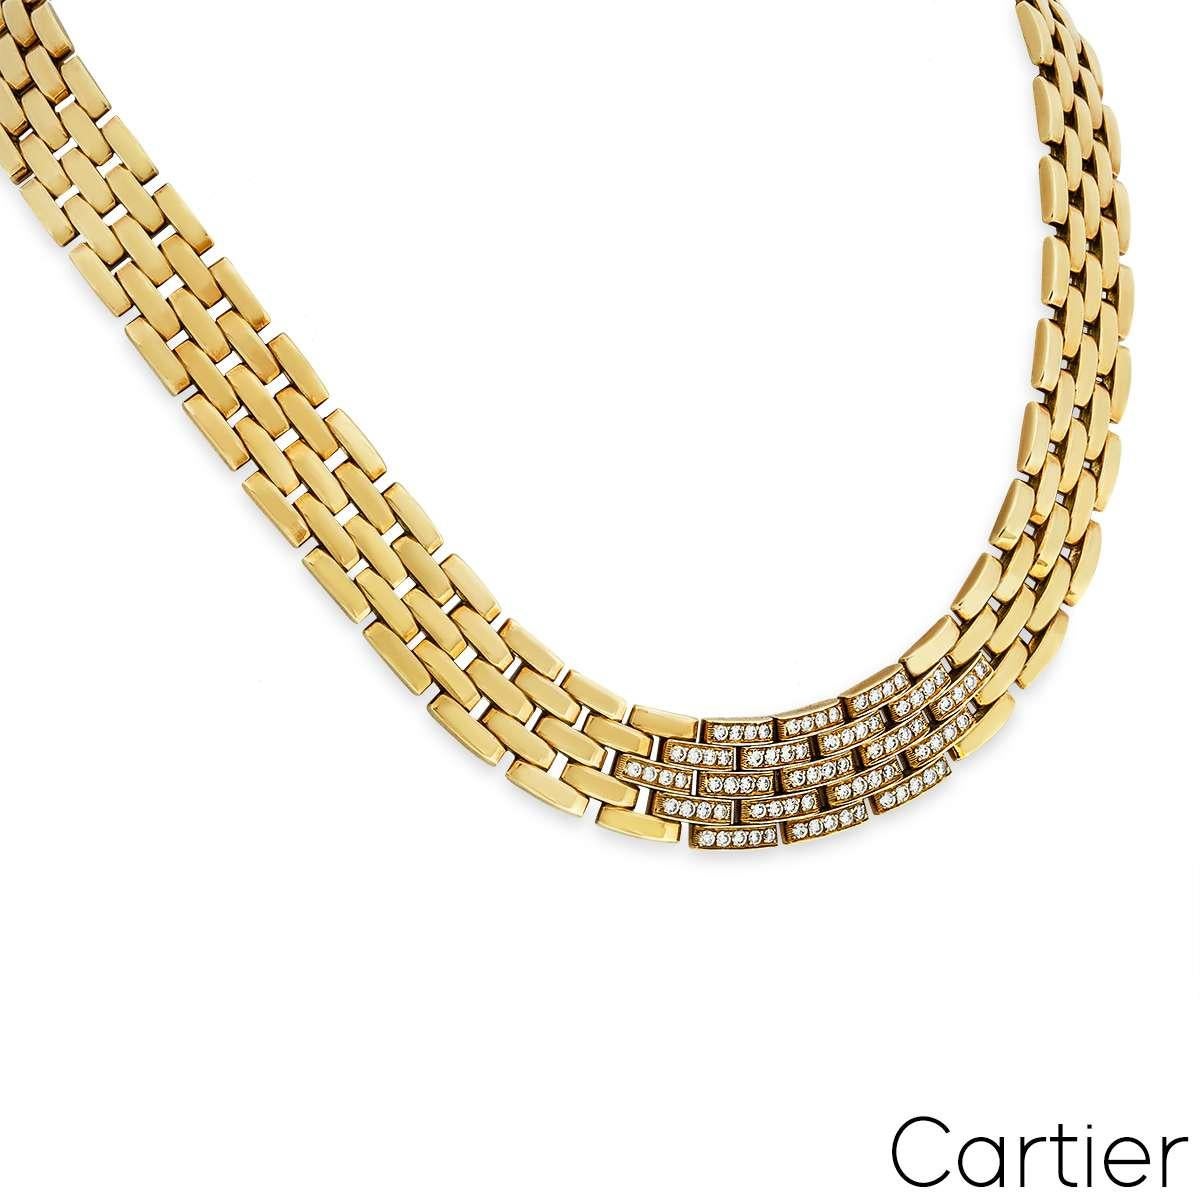 Ein wunderschönes Collier aus 18 Karat Gelbgold mit Cartier-Diamanten Maillon Panthere aus der Kollektion Links and Chains. Das Collier besteht aus 4 Reihen mit 41 ikonischen Panthere Maillon-Gliedern, die durch 48 runde Diamanten im Brillantschliff